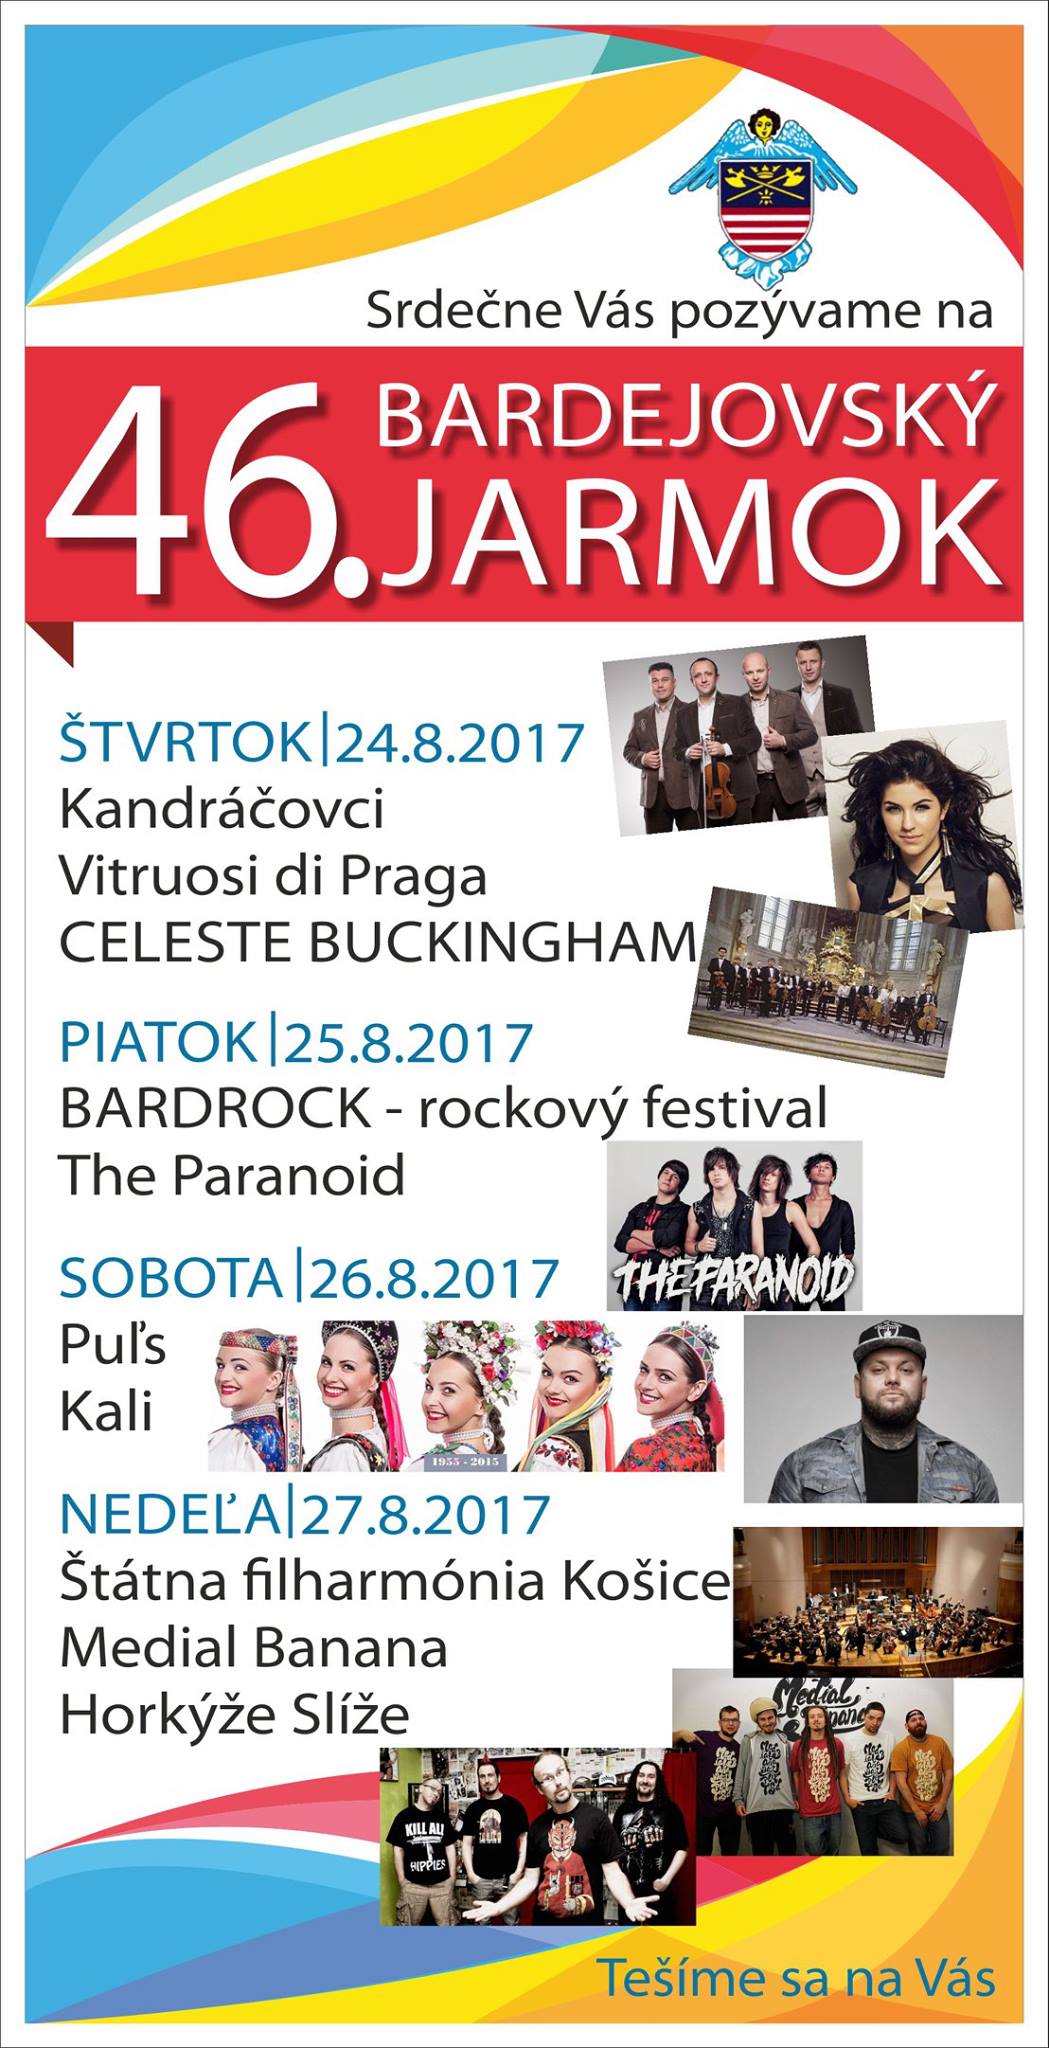 46. Bardejovsk jarmok 2017